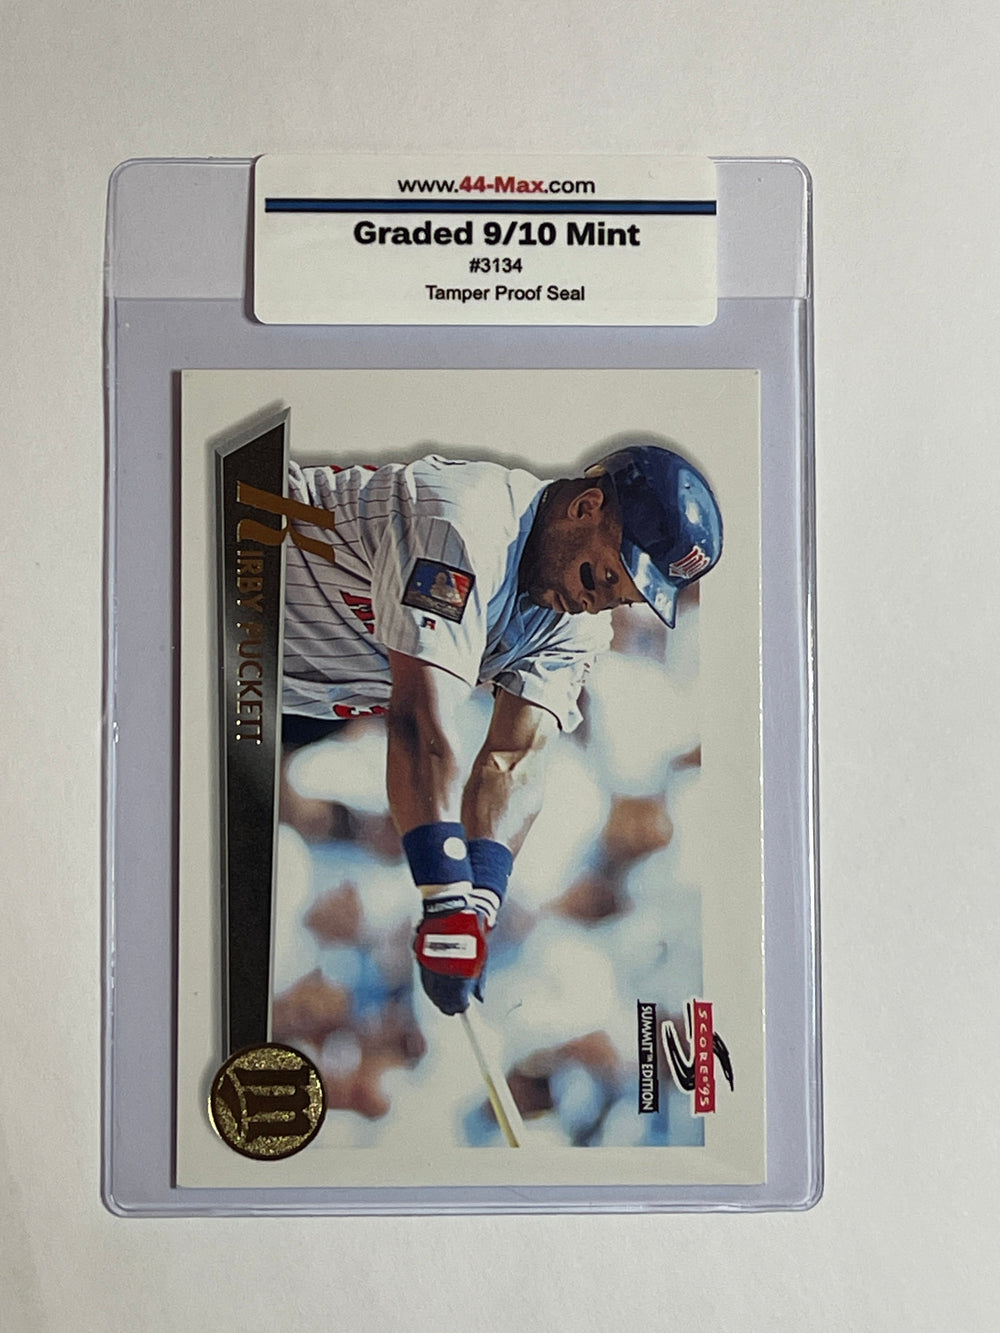 Kirby Puckett 1995 Score Summit Baseball Card. 44-Max 9/10 Mint  #3134